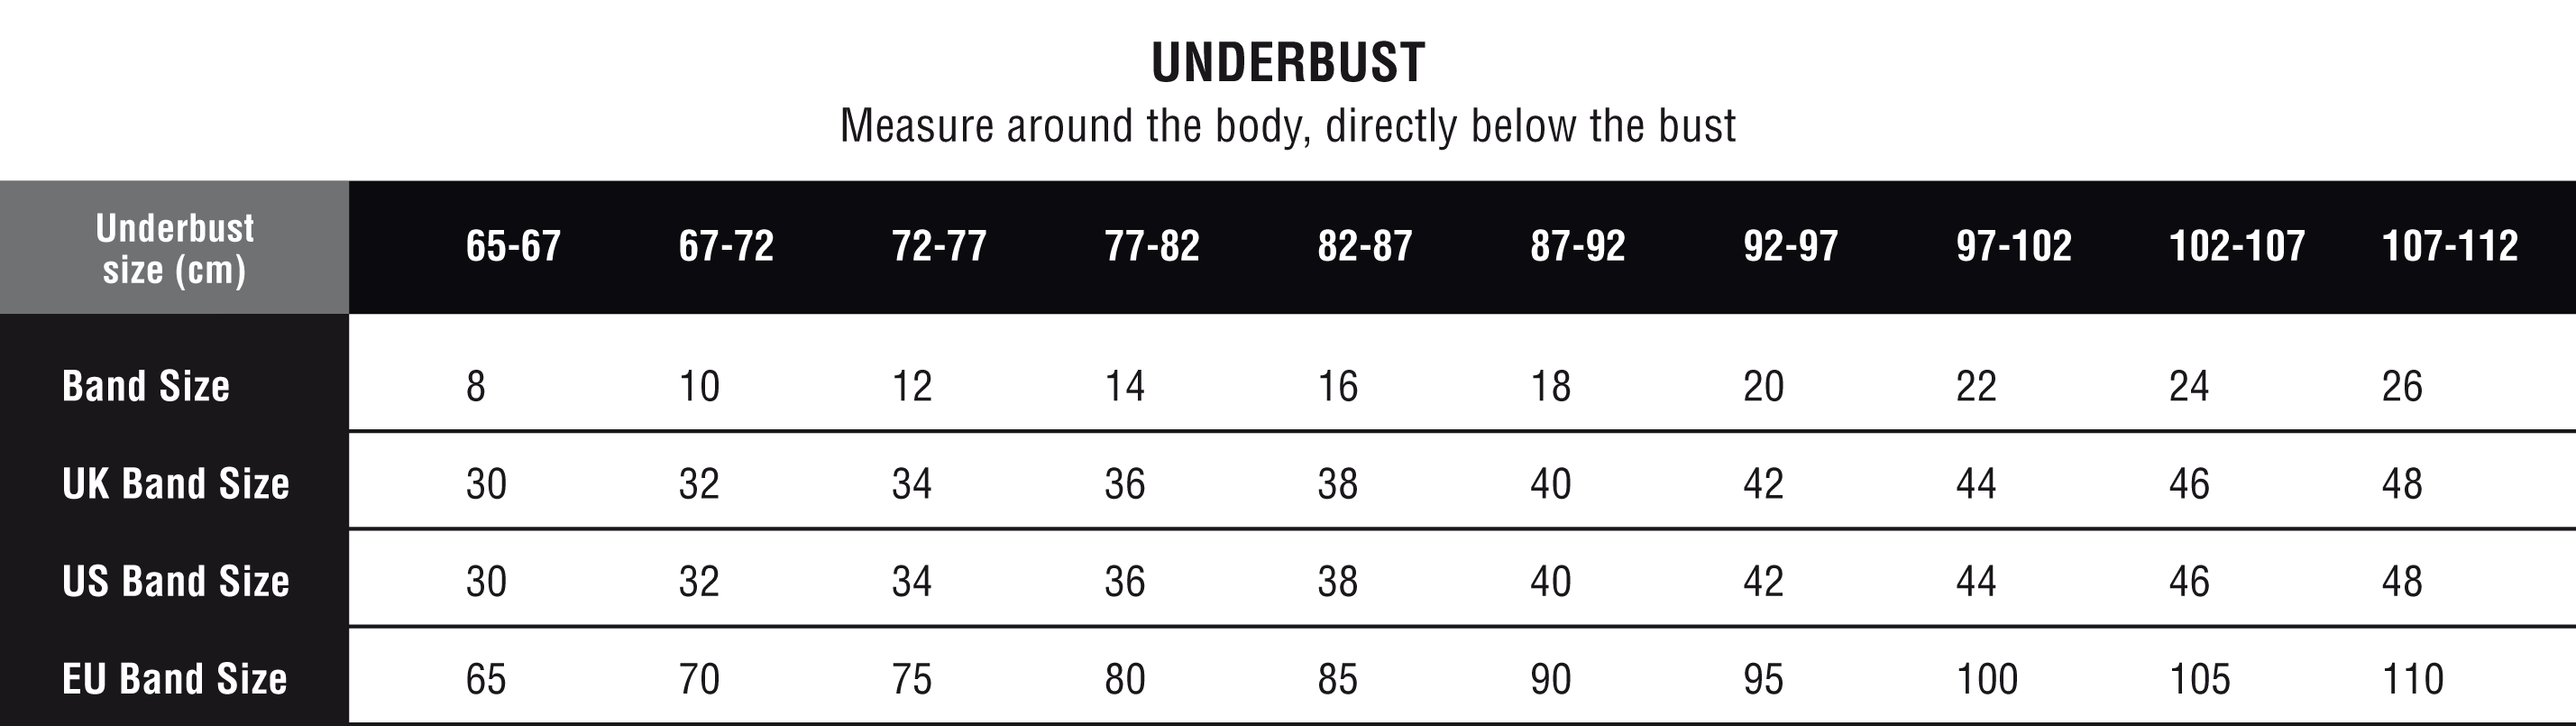 underbust measurement chart